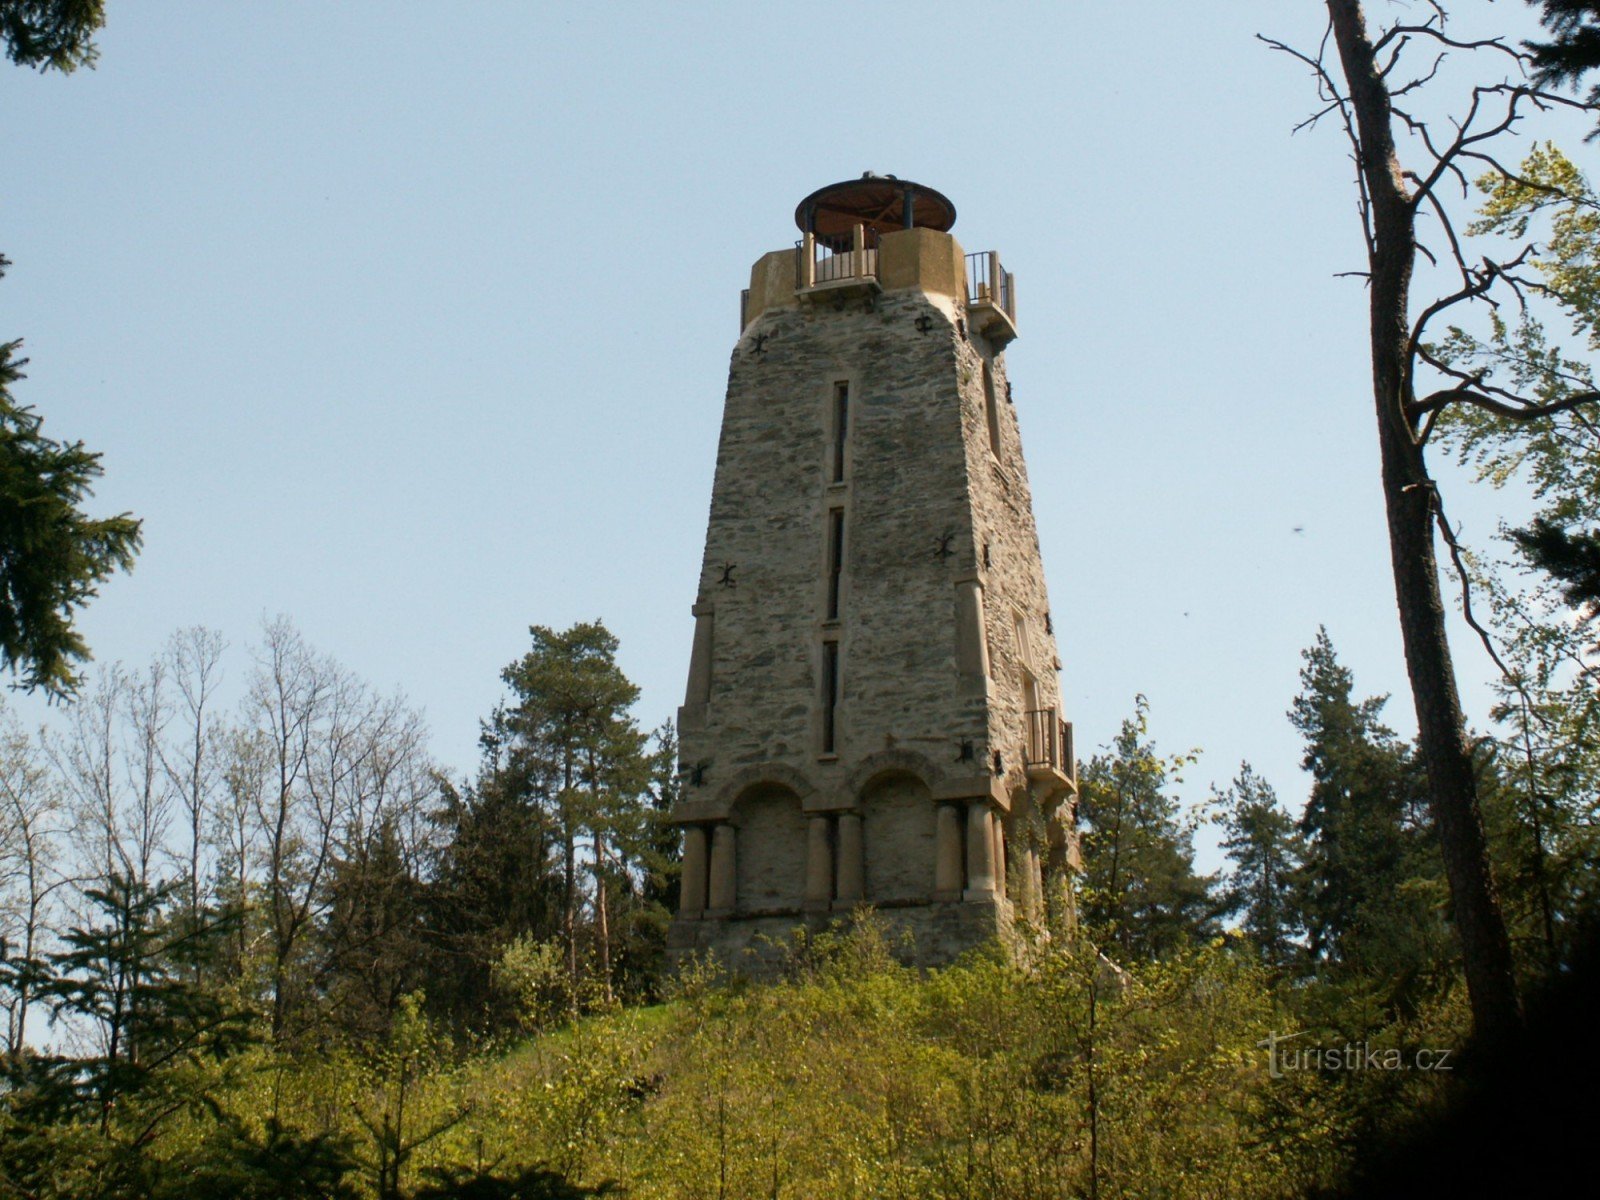 Turnul de observație Bismarck